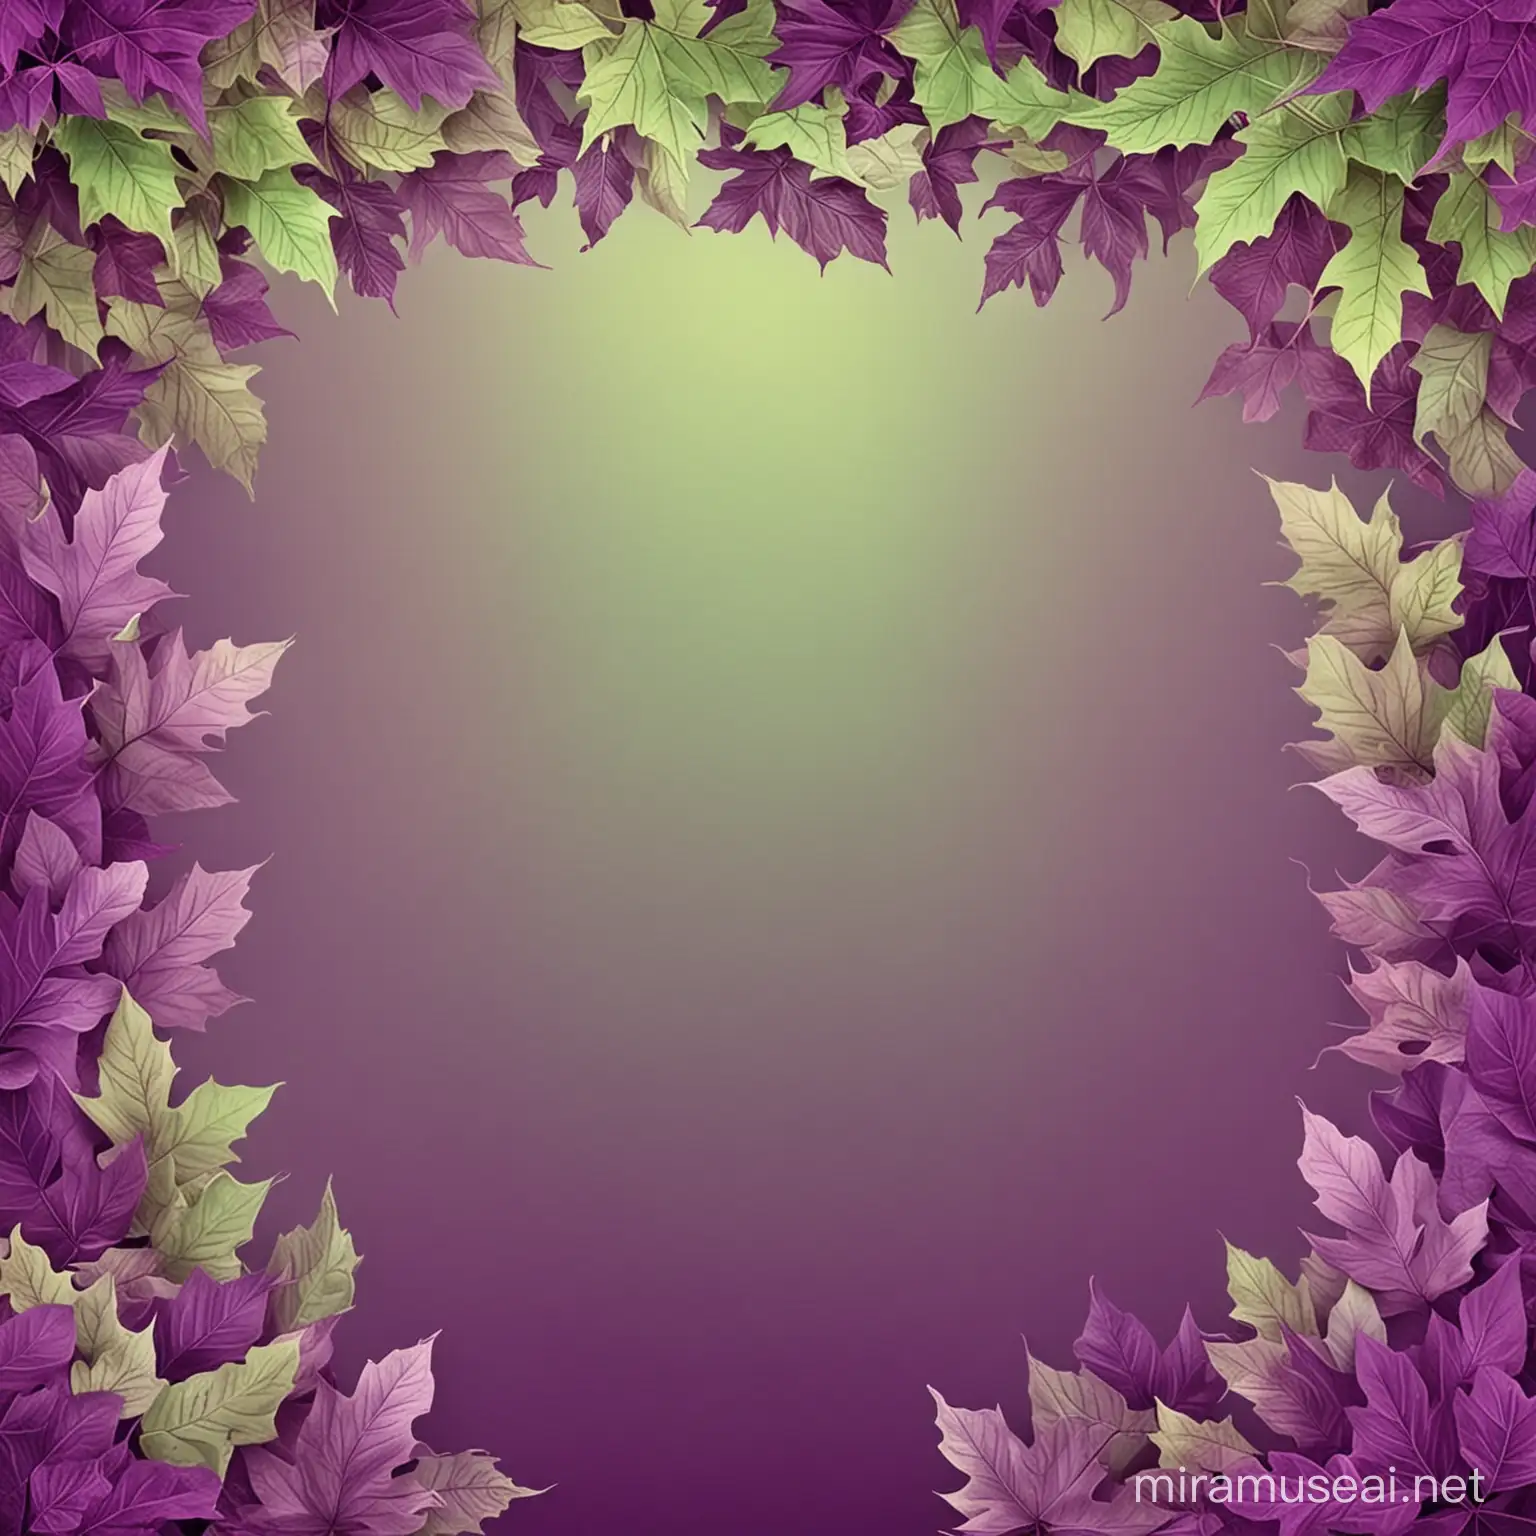 genera un fondo de otoño, con las hojas con los  colores morado y verde